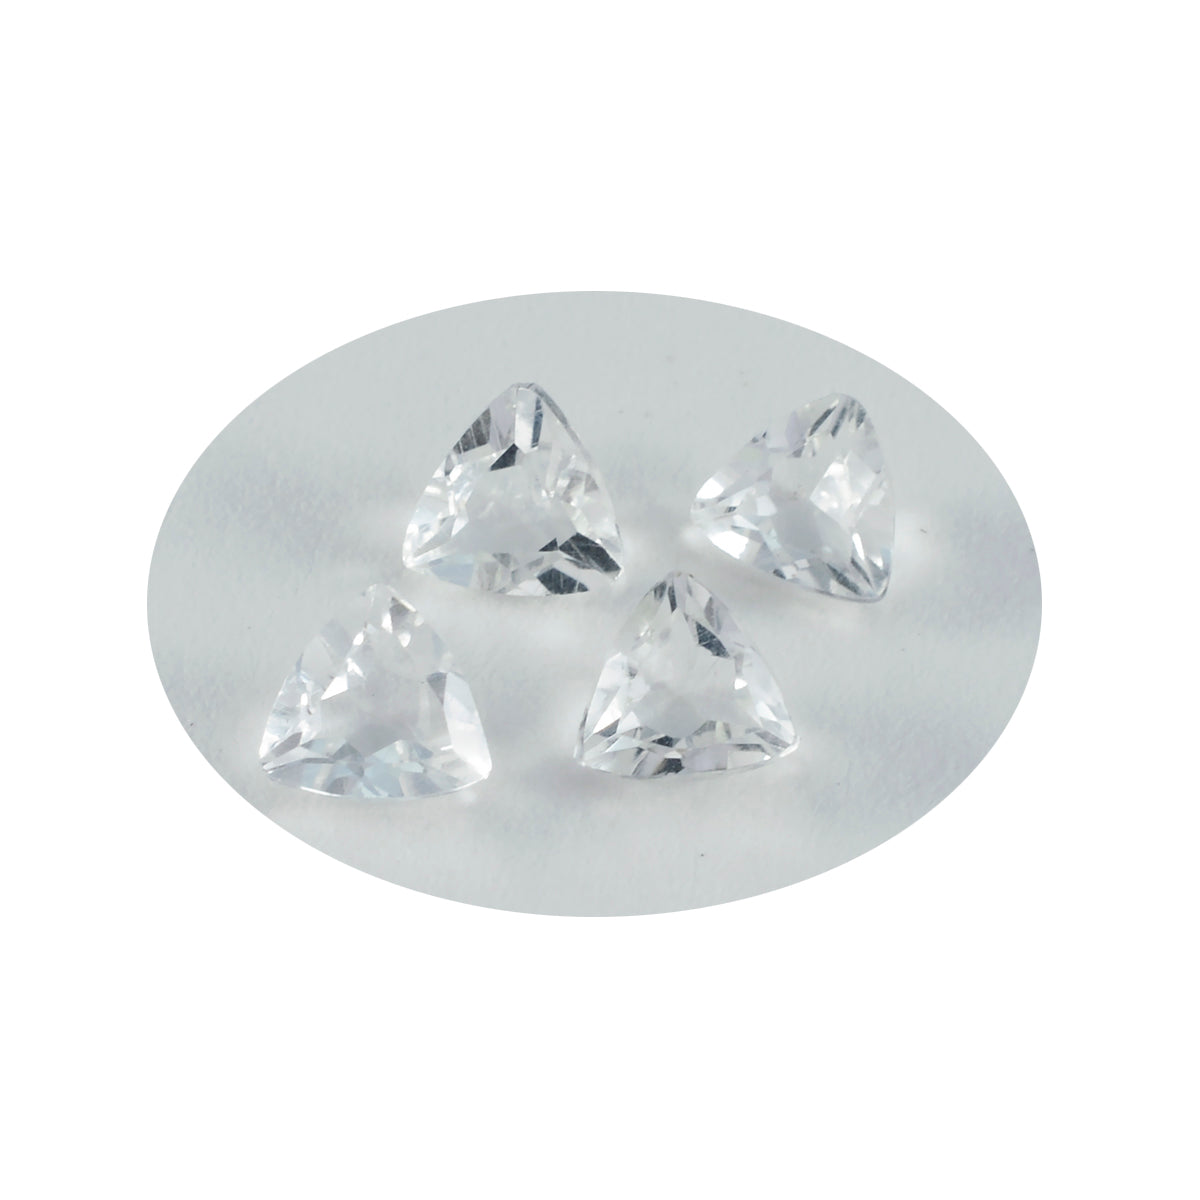 Riyogems 1 Stück weißer Kristallquarz, facettiert, 11 x 11 mm, Billionenform, süßer, hochwertiger, loser Edelstein